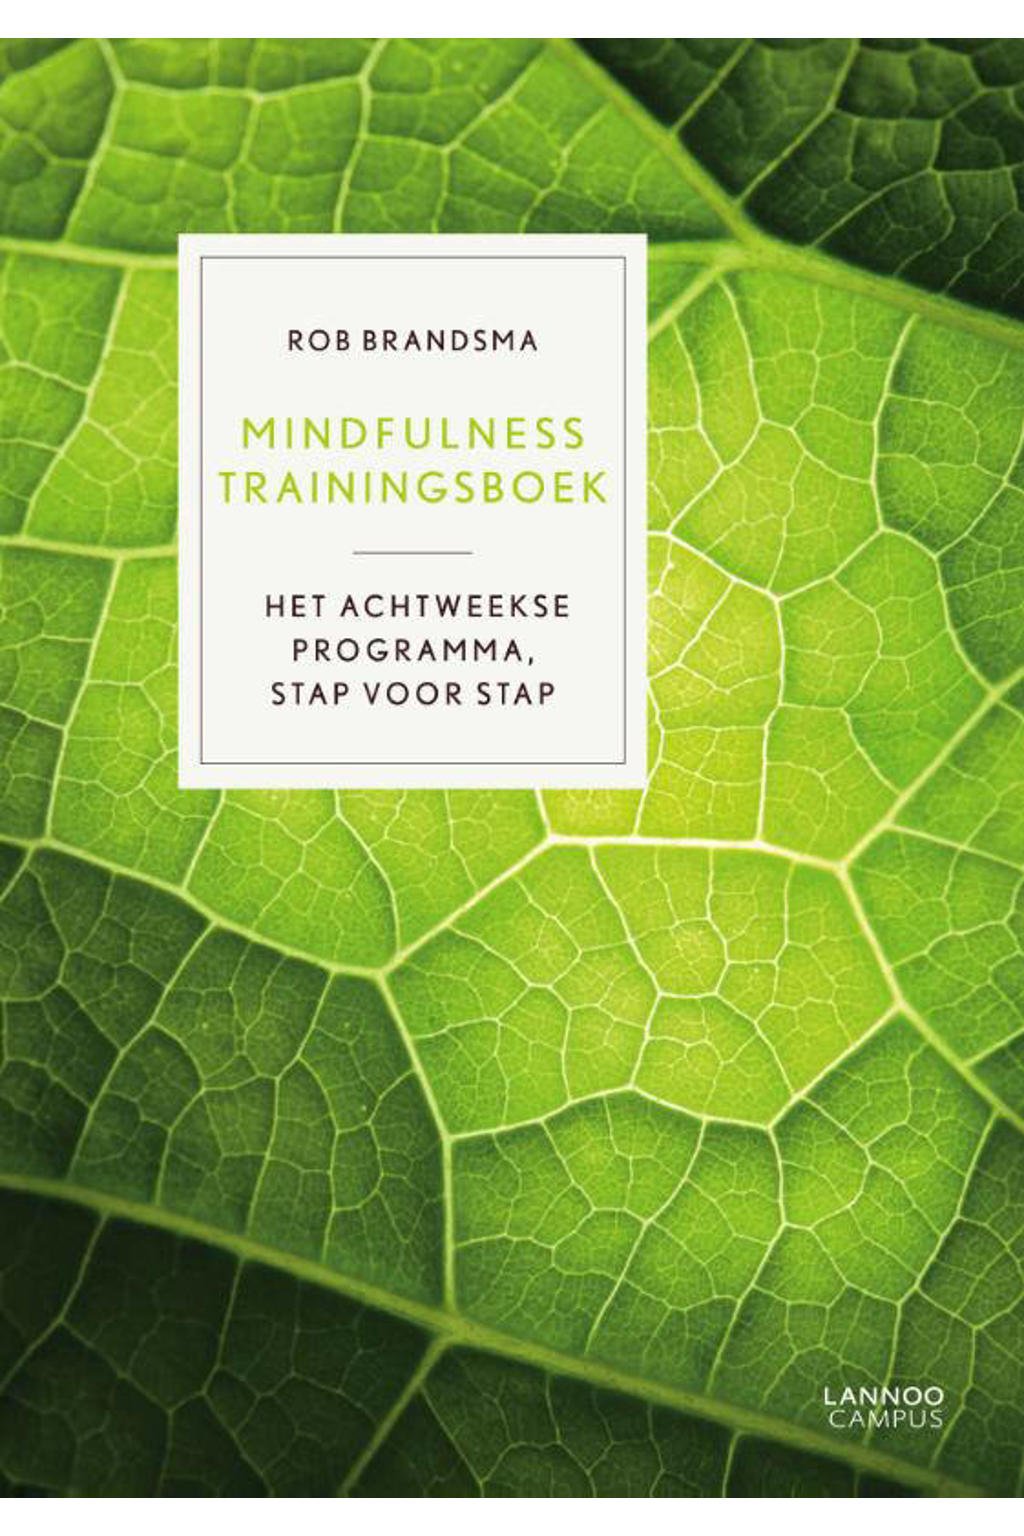 Mindfulness trainingsboek - Rob Brandsma